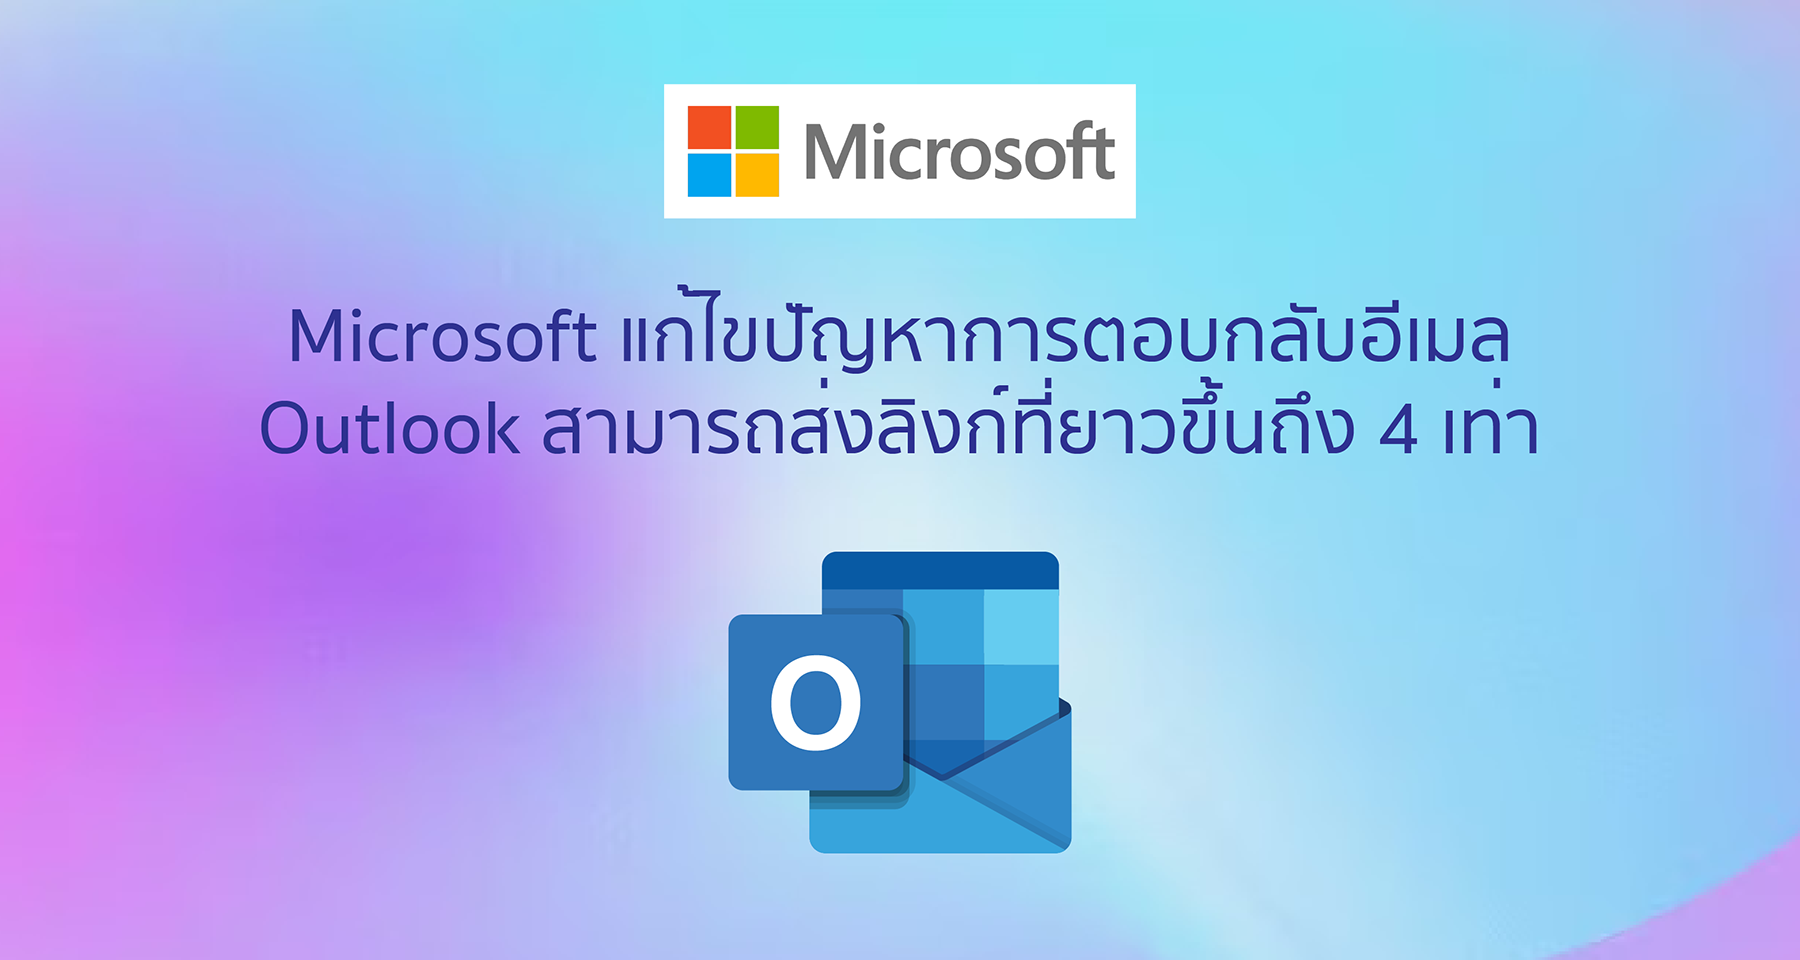 Microsoft แก้ไขปัญหาการตอบกลับอีเมล Outlook สามารถส่งลิงก์ที่ยาวขึ้นถึง 4 เท่า